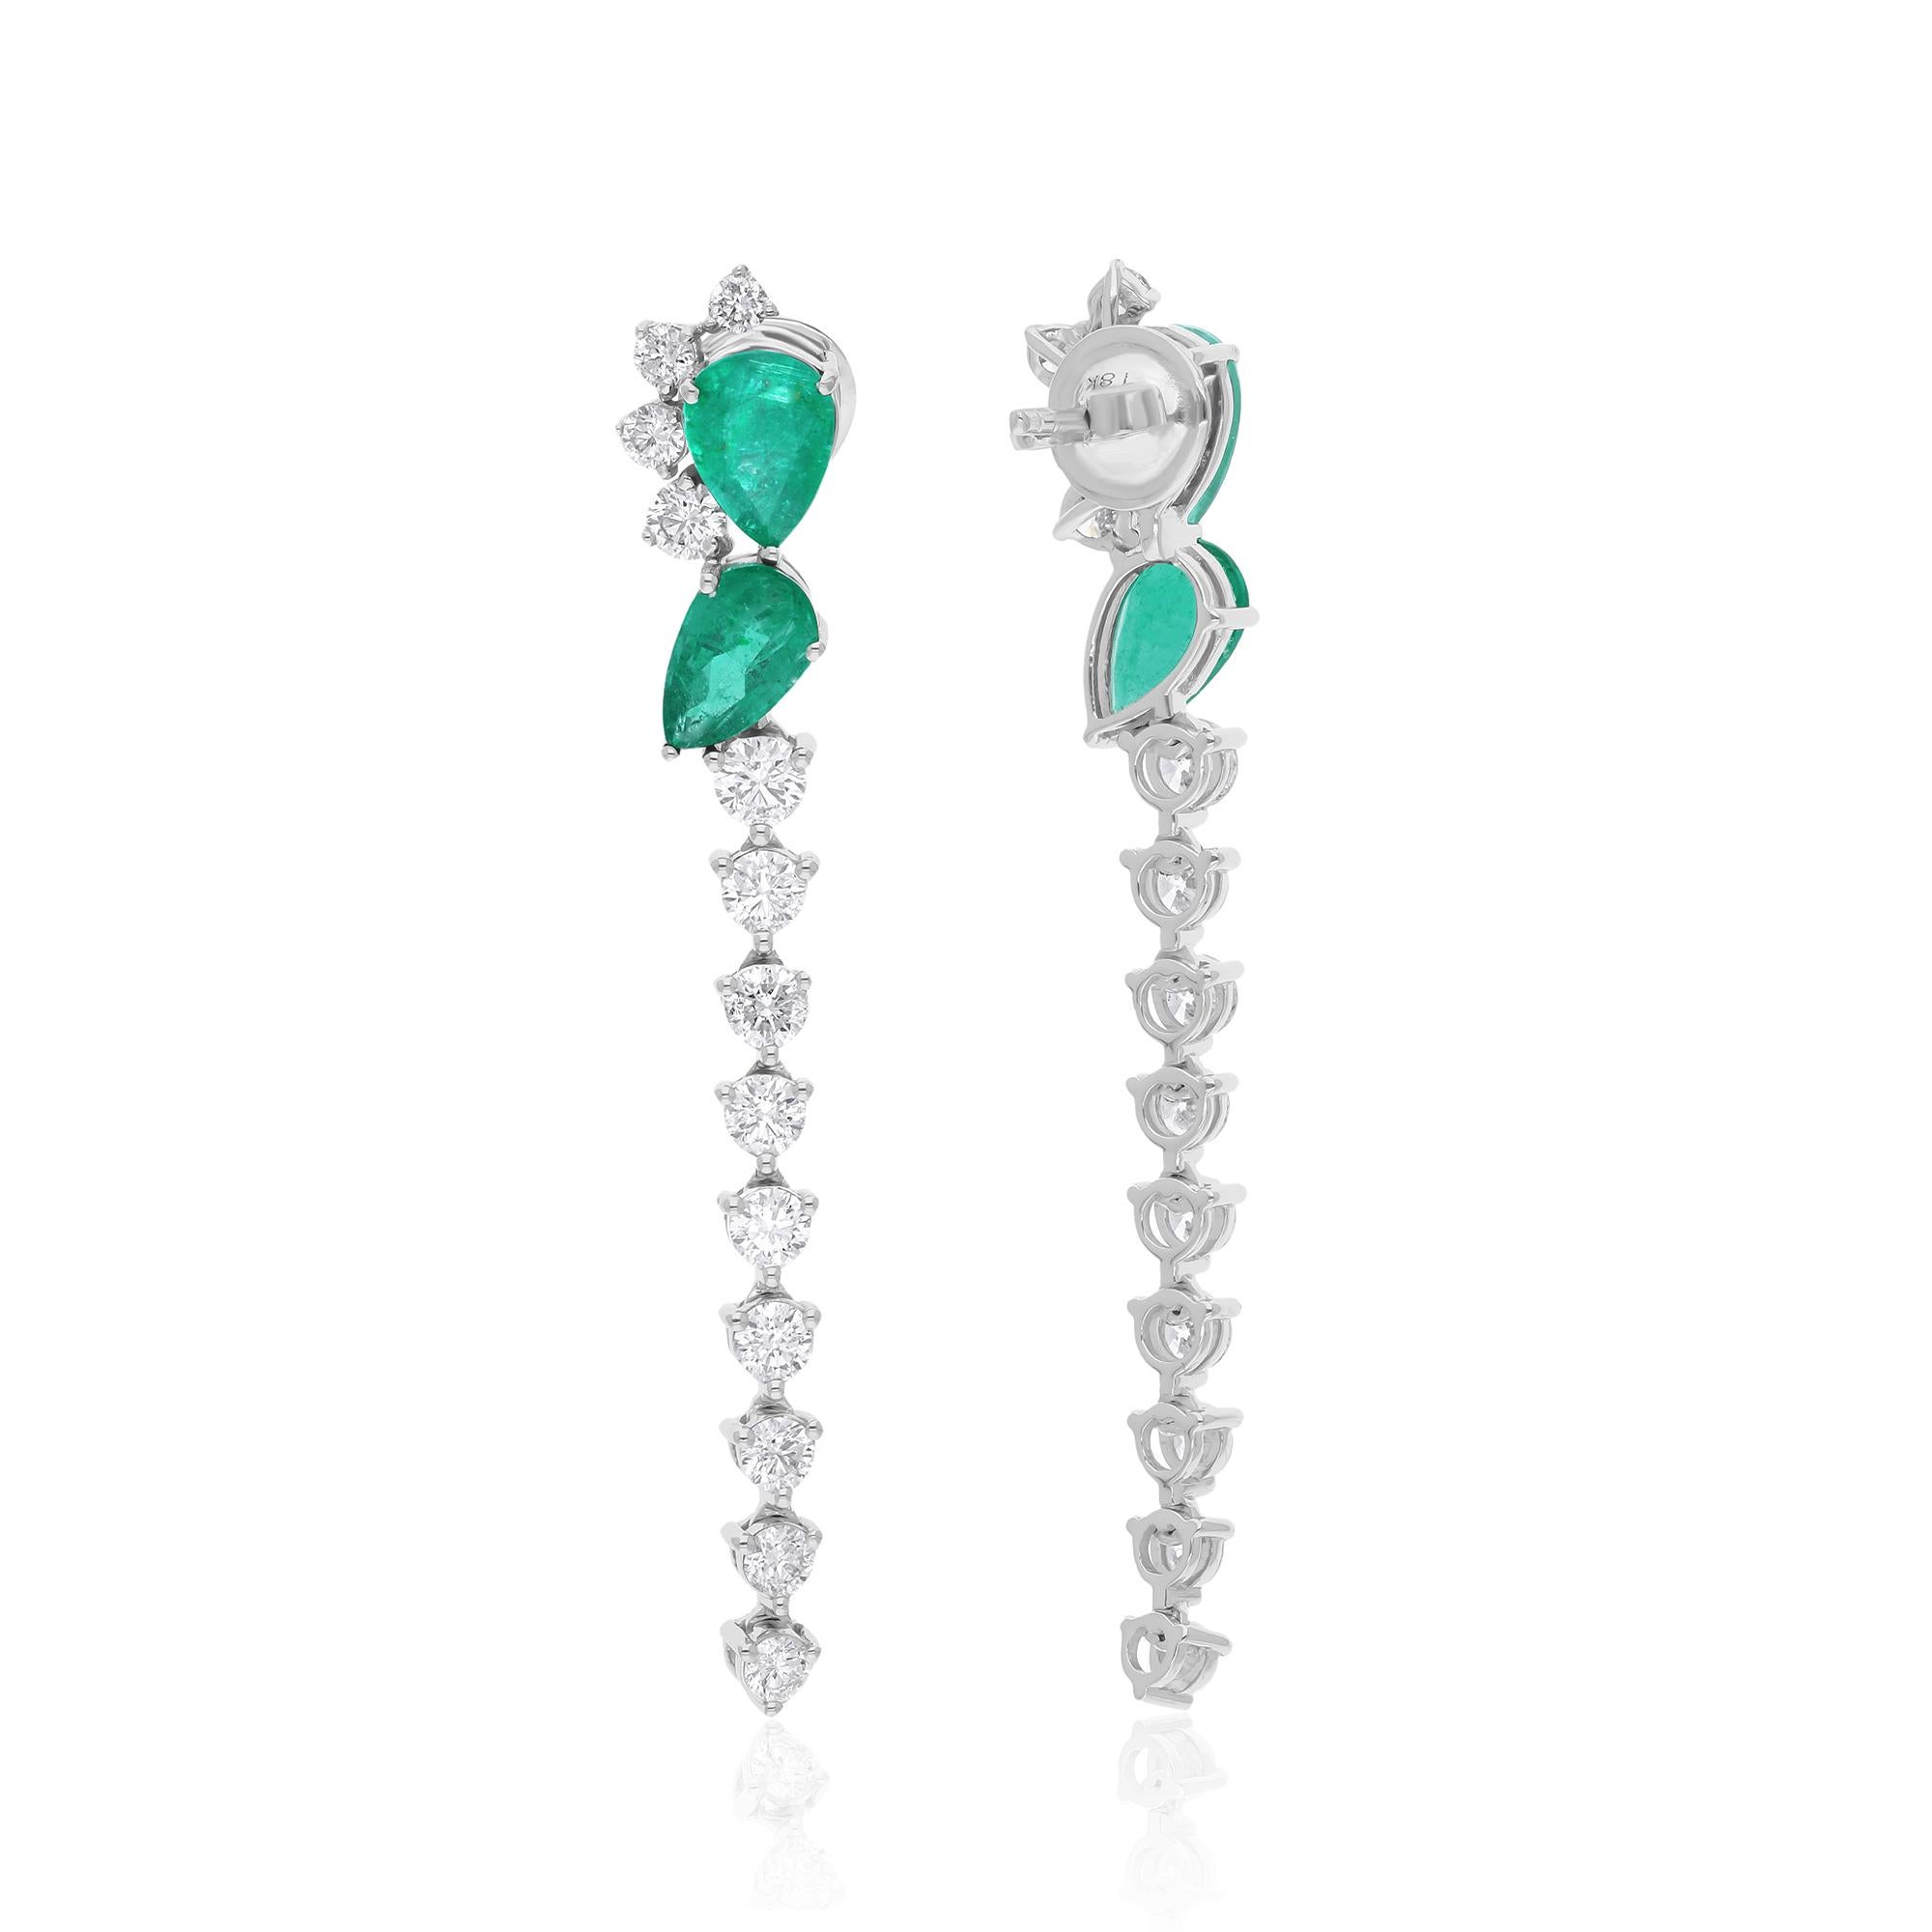 Das Herzstück dieser exquisiten Ohrringe ist der sambische Smaragd, der für seinen fesselnden grünen Farbton und seine bemerkenswerte Klarheit bekannt ist. Aus den reichen Minen Sambias stammend, strahlt jeder Smaragd einen natürlichen Reiz aus, der